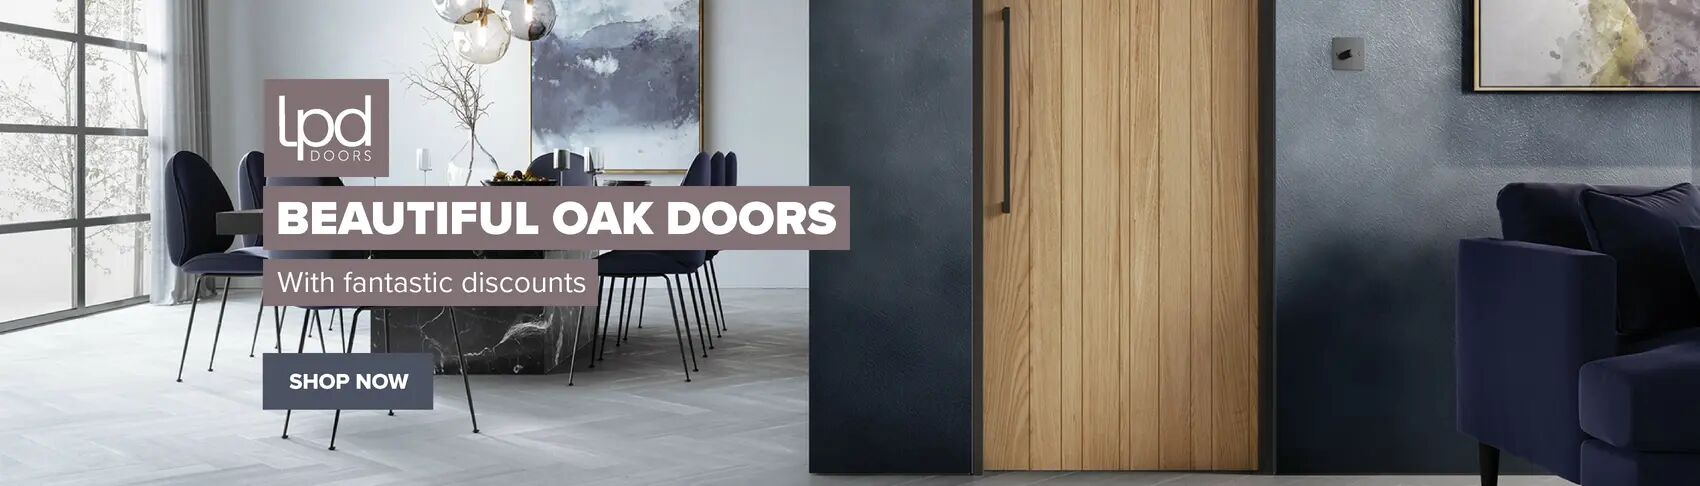 LPD Oak Doors Offer